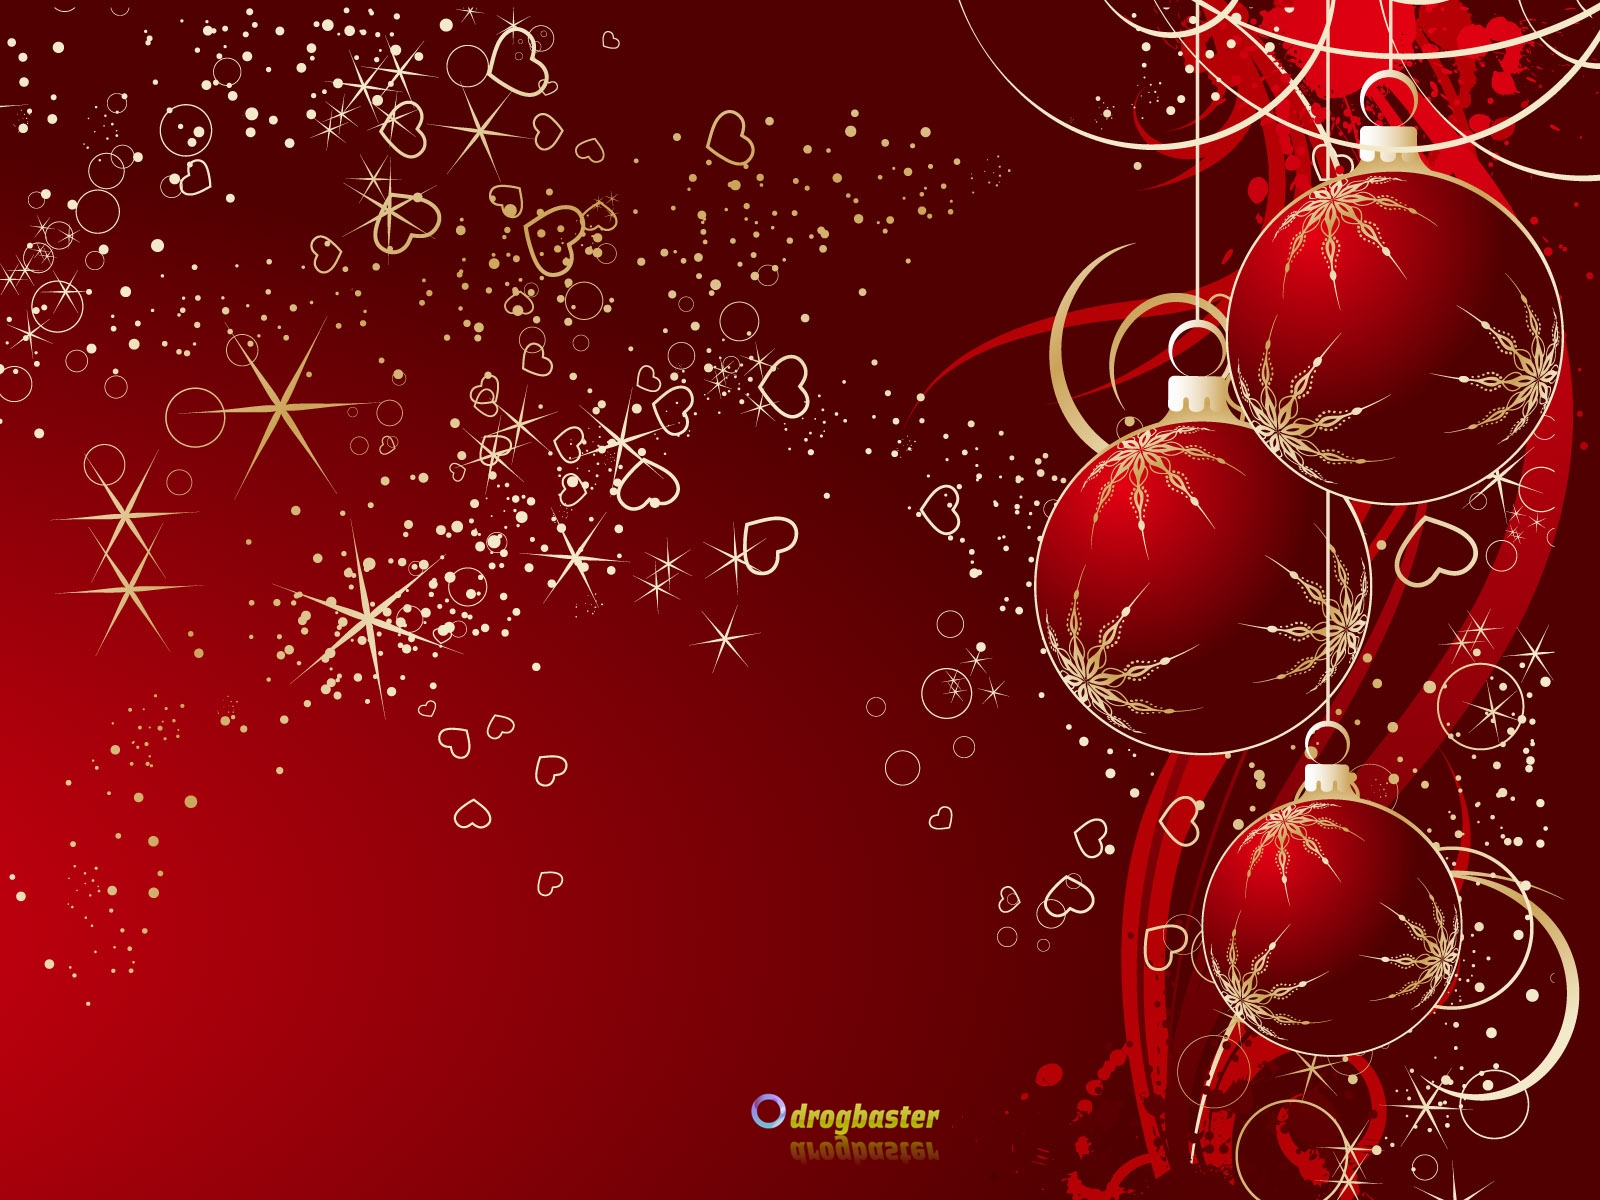 Sfondi Cellulare Natalizi.Sfondi Immagini E Decori Di Natale Grafica Per Cellulare Android